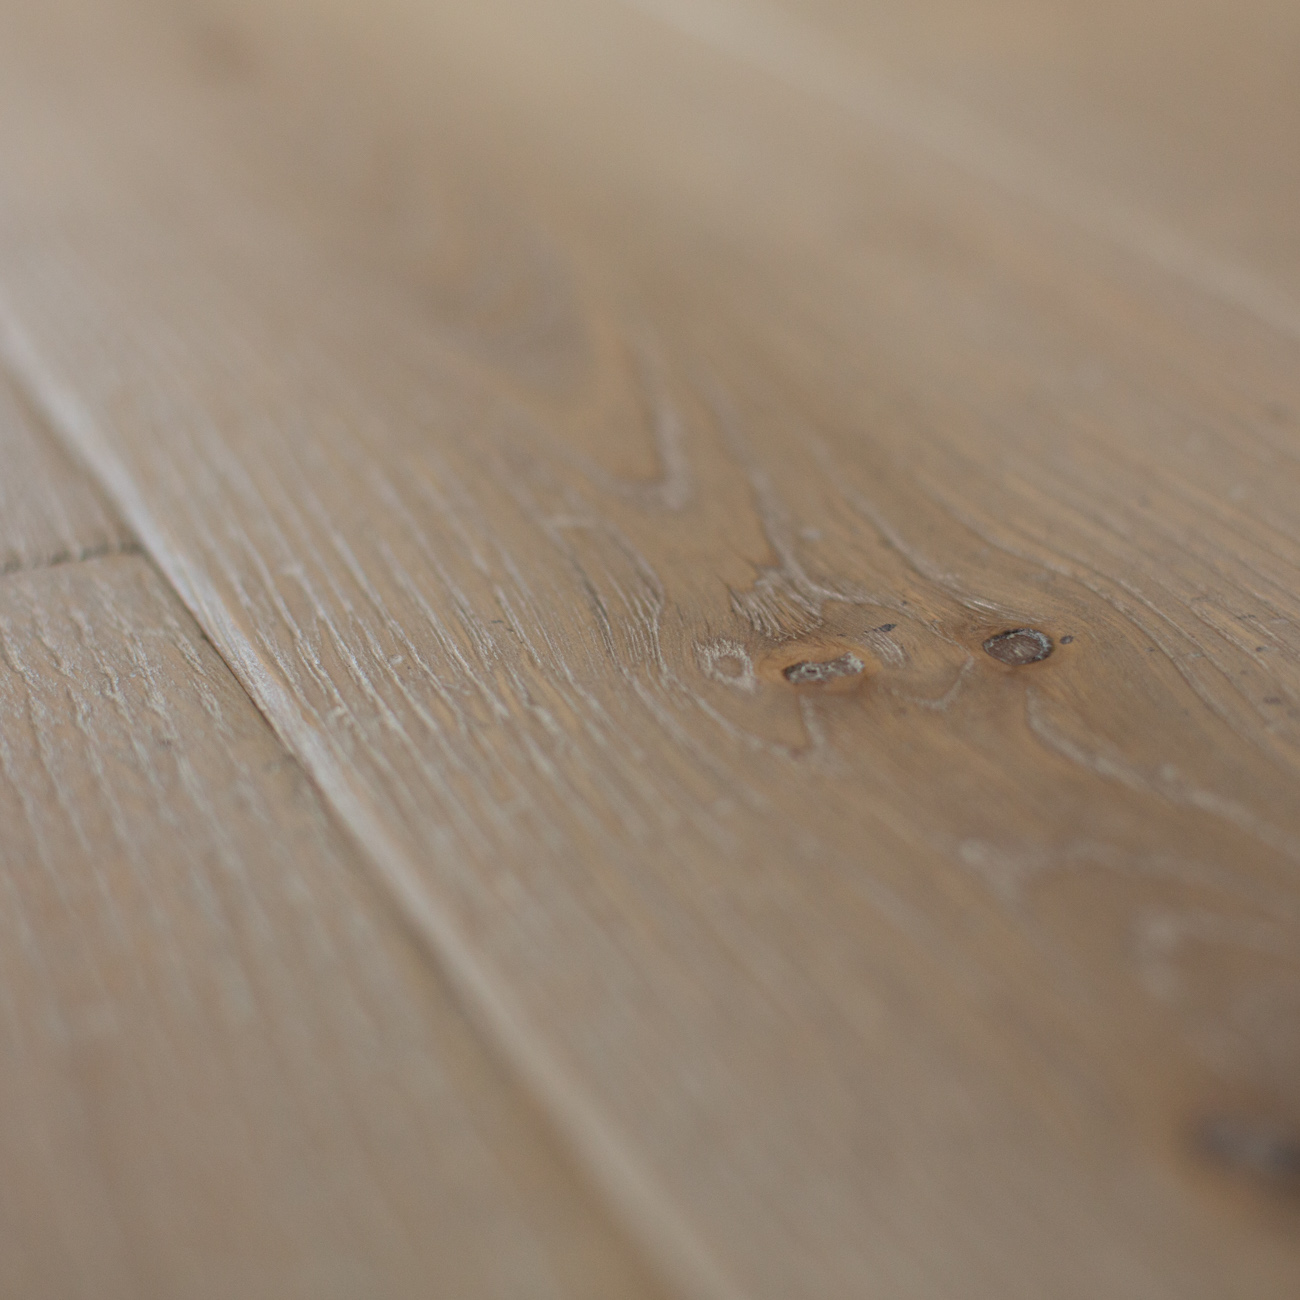 Distressed engineered wood flooring